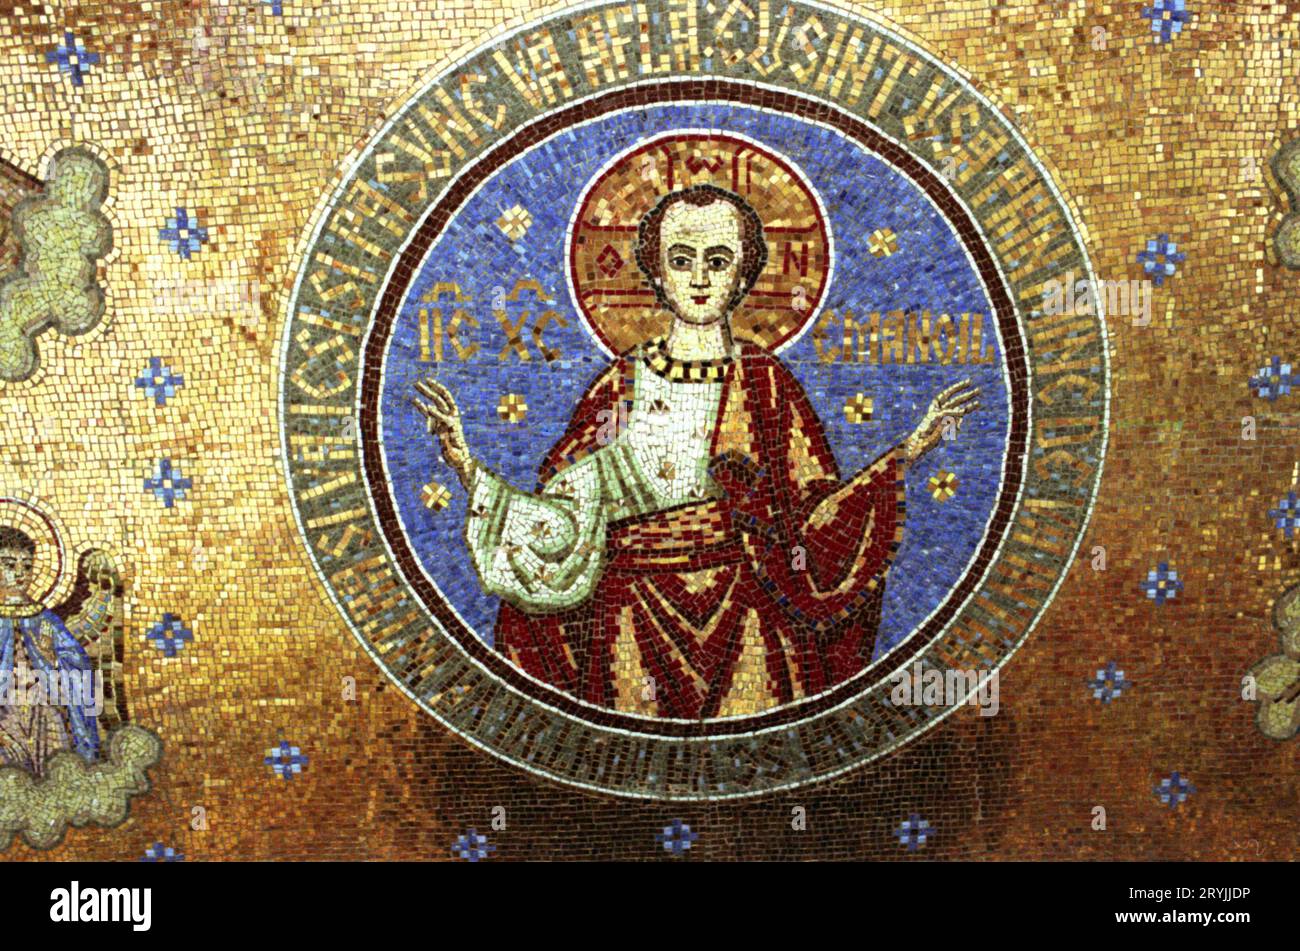 Condado de ilfov, Rumania, 1990. Mosaico en el Monasterio Tiganesti, que representa a Jesucristo con su nombre hebreo Emanuel, y con el versículo bíblico de Juan 10:9. Foto de stock